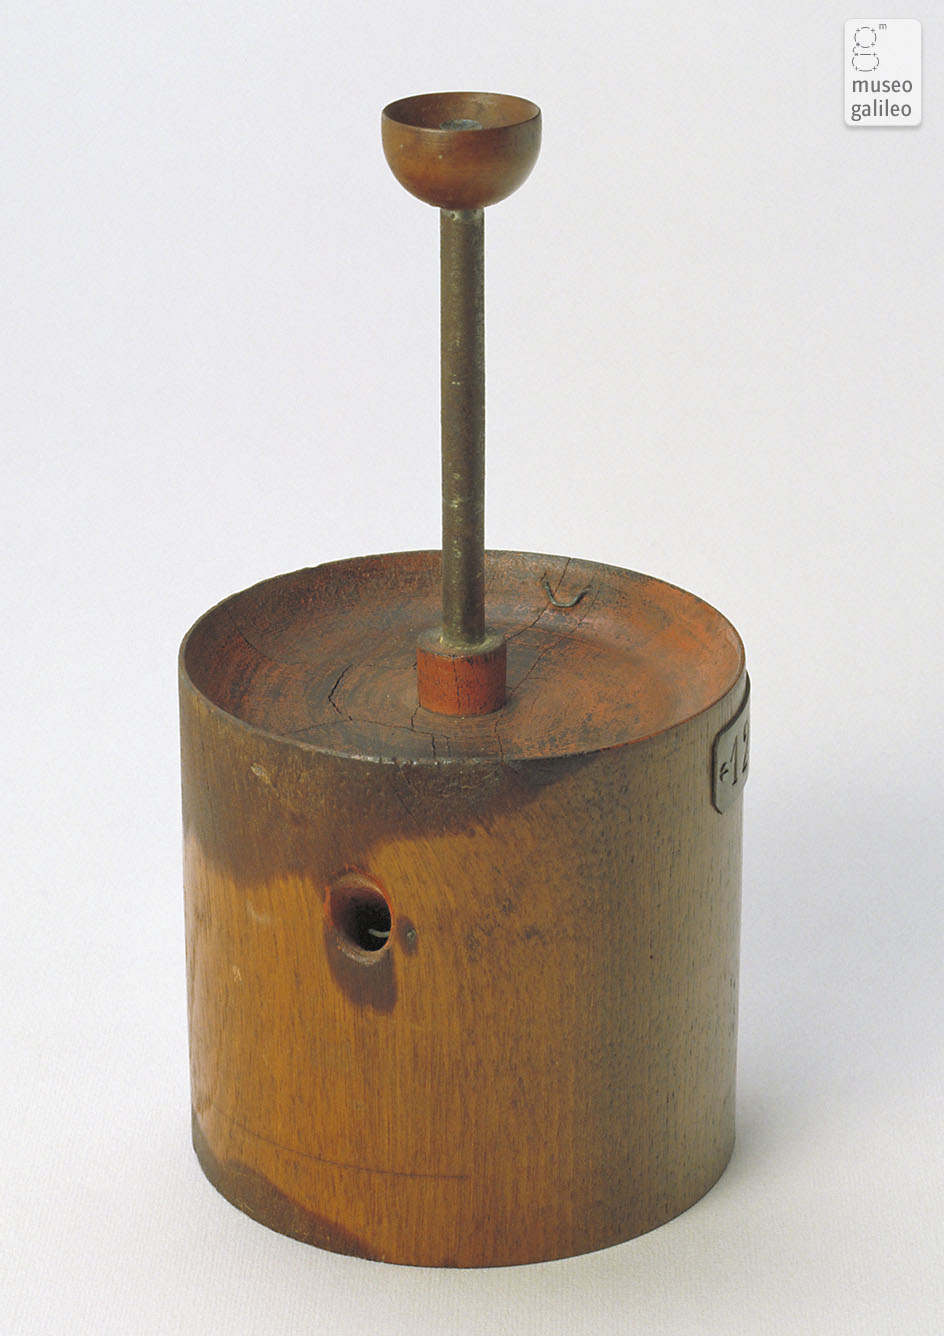 Versione di Nobili dell'apparecchio per il conduttore rotante di Faraday (Inv. 451)